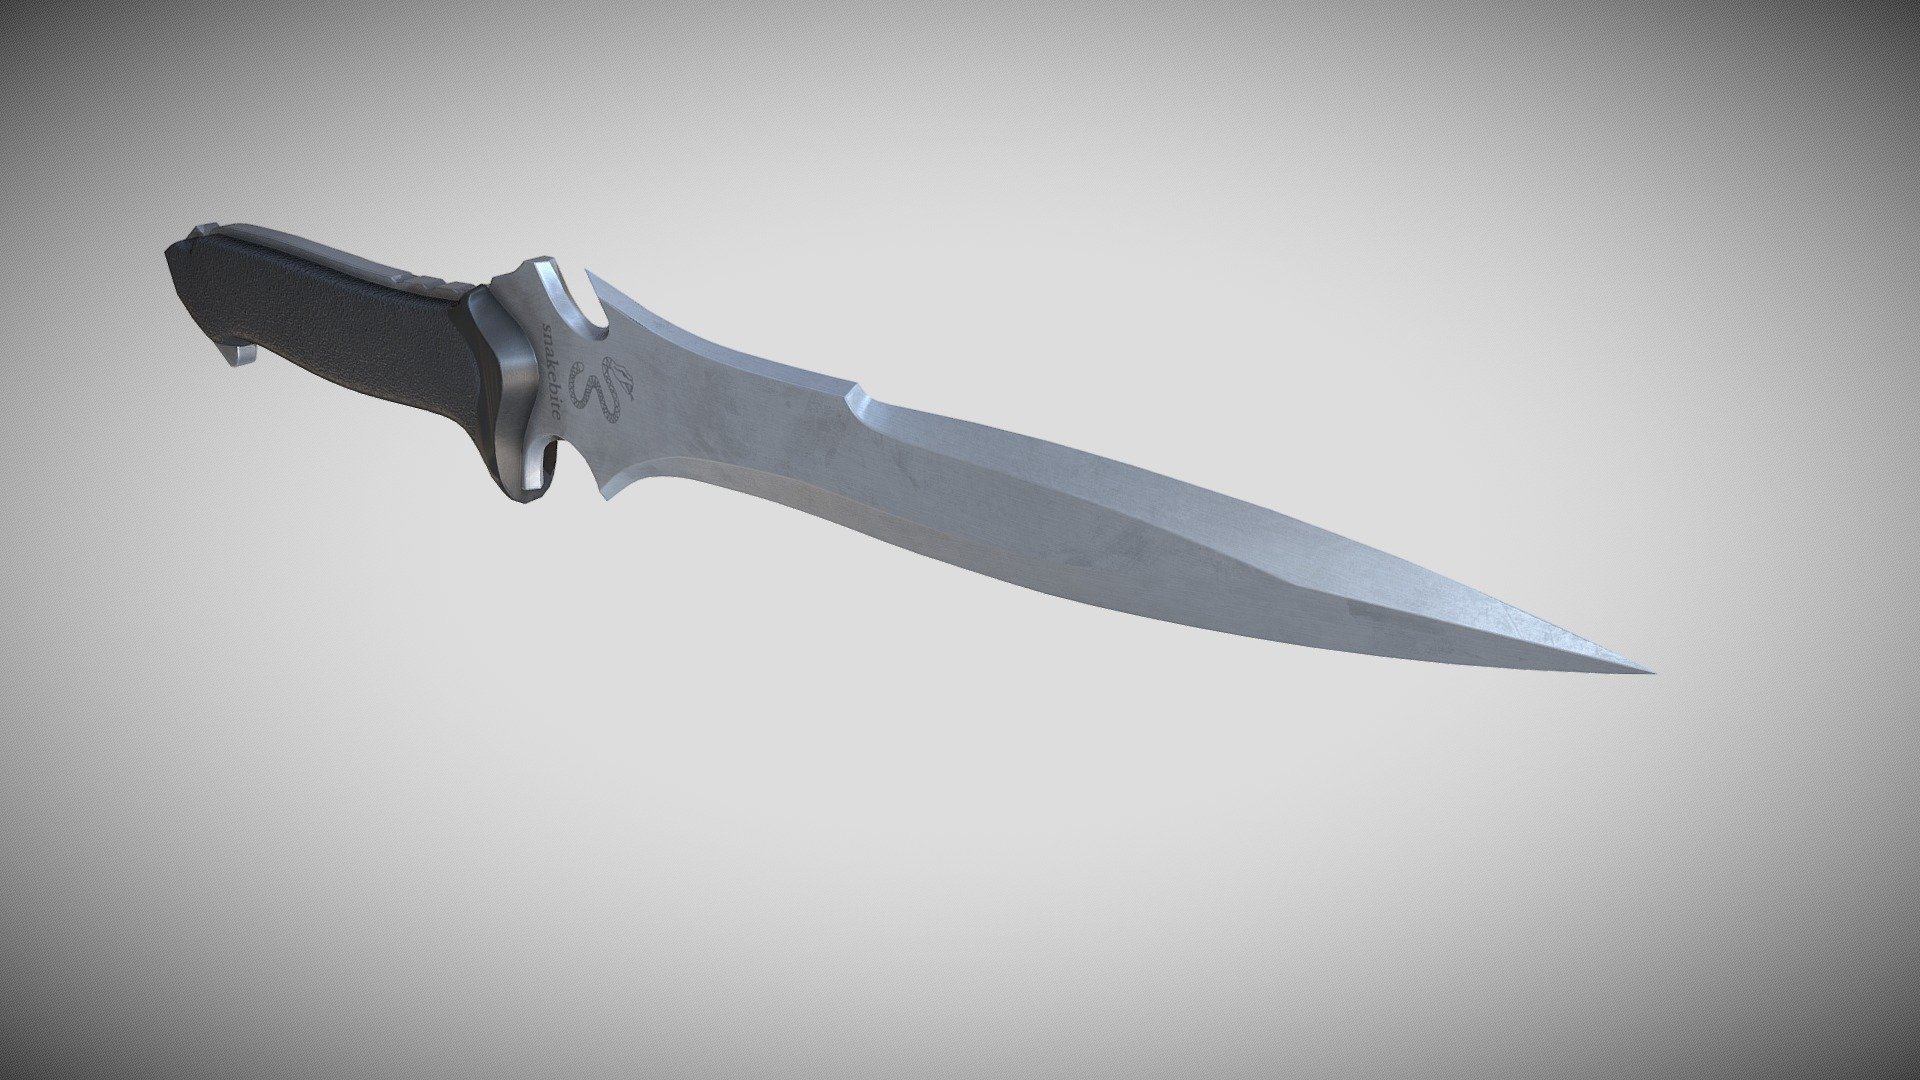 Fan art of Jack Krauser’s knife from Resident Evil 4. Modeled in Blender and Textured in Substance Painter 3d model